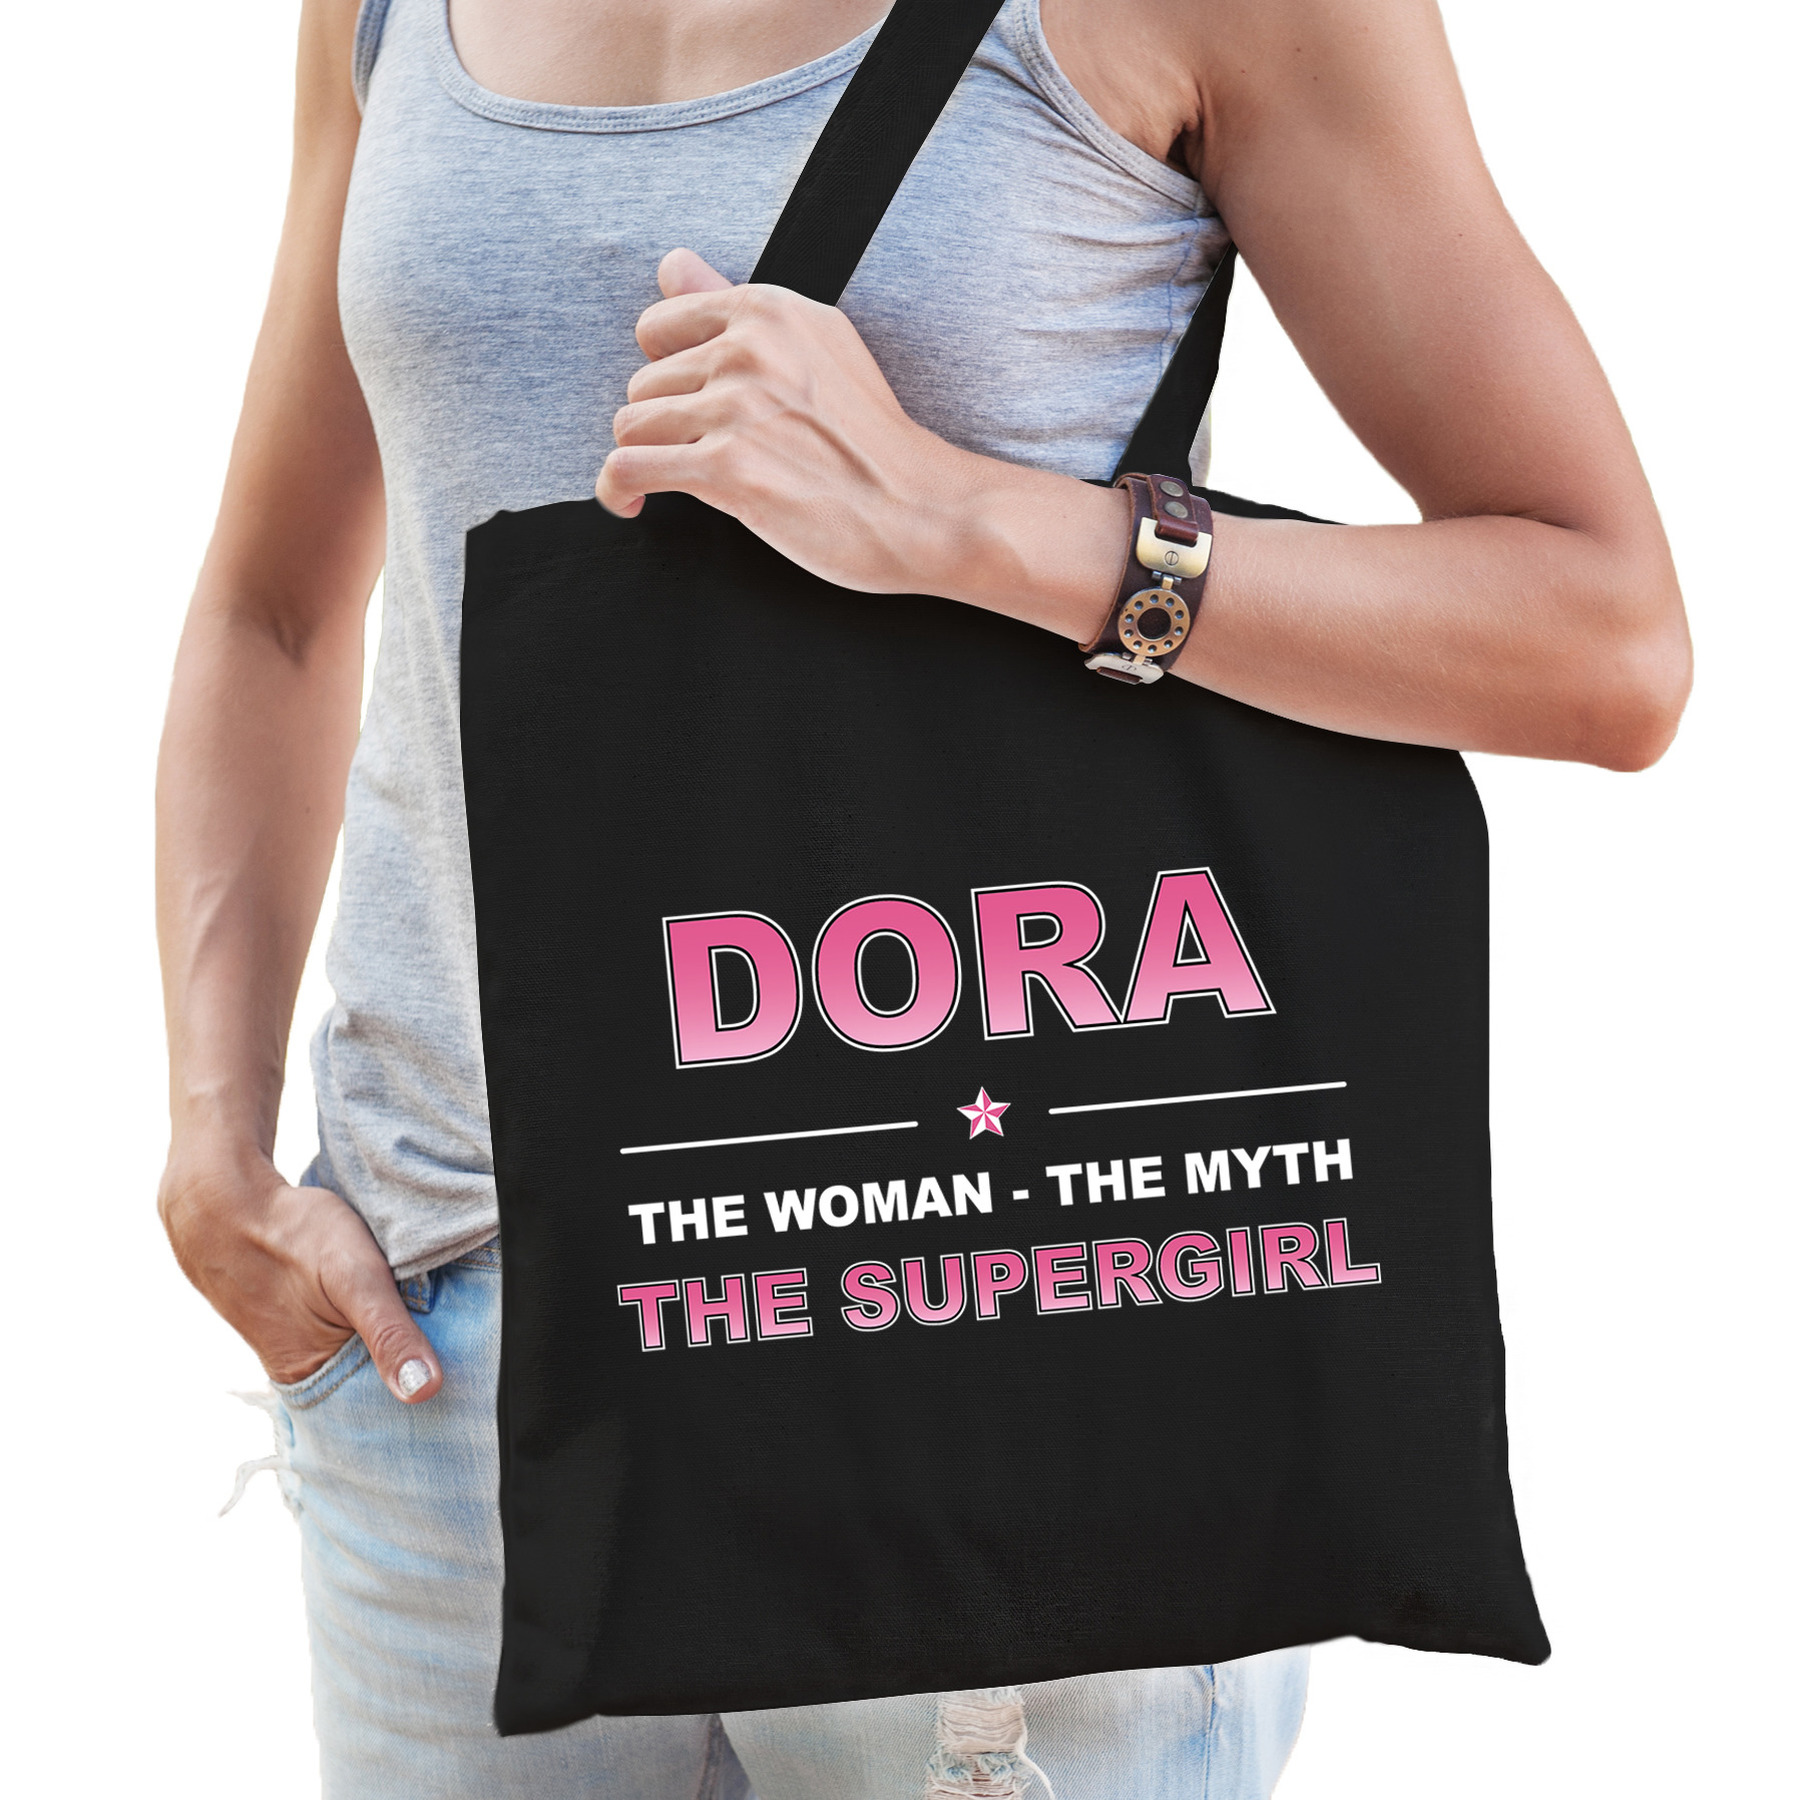 Naam Dora The women, The myth the supergirl tasje zwart - Cadeau boodschappentasje